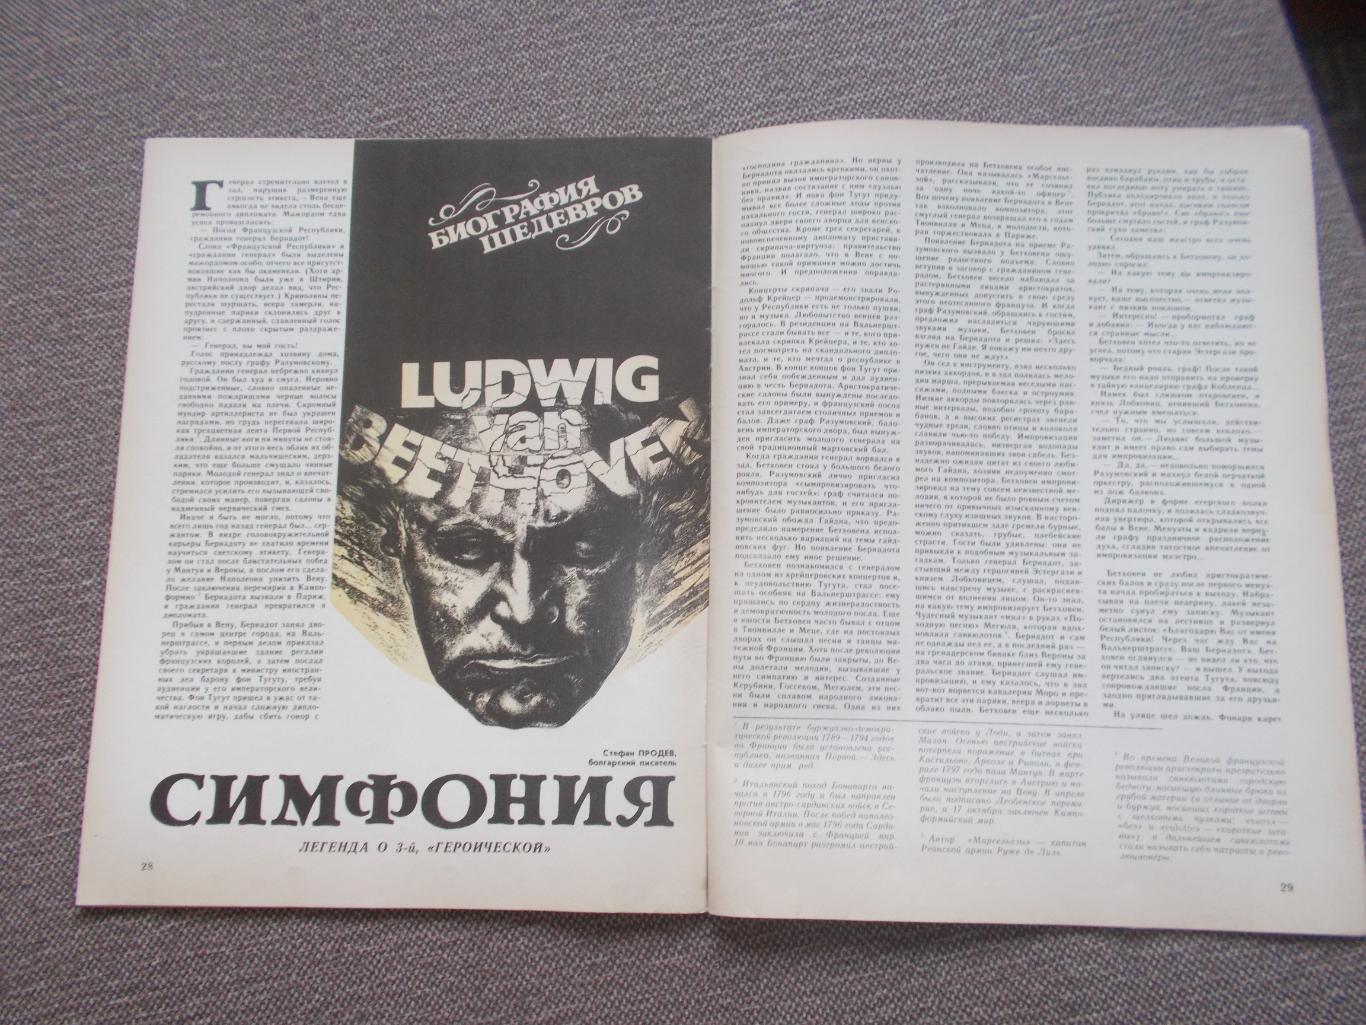 Журнал СССР :Ровесник№ 2 (февраль) 1986 г. (Молодежный музыкальный журнал) 3